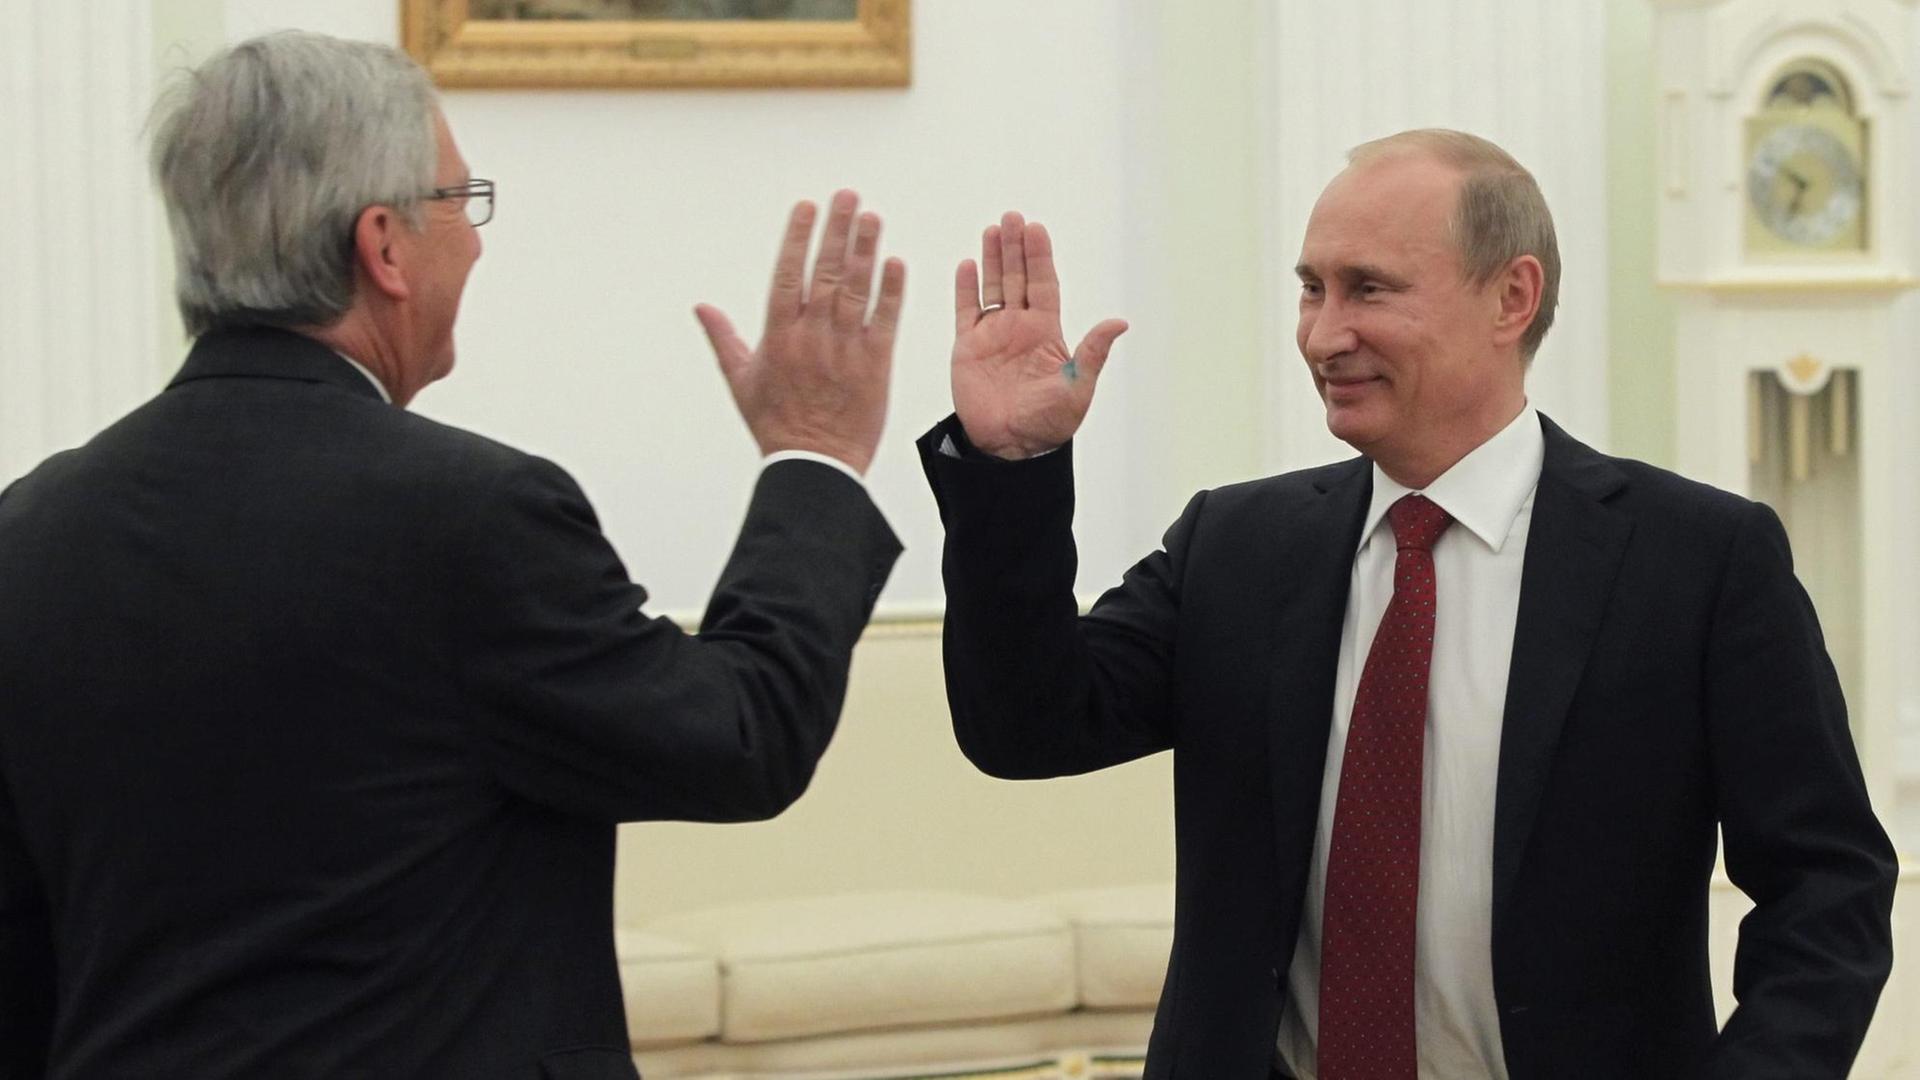 Bild aus dem Jahr 2012: Der russische Präsident Wladimir Putin (rechts) empfängt den damaligen Ministerpräsidenten Luxemburgs, Jean-Claude Juncker, in Moskau mit einem "High Five".